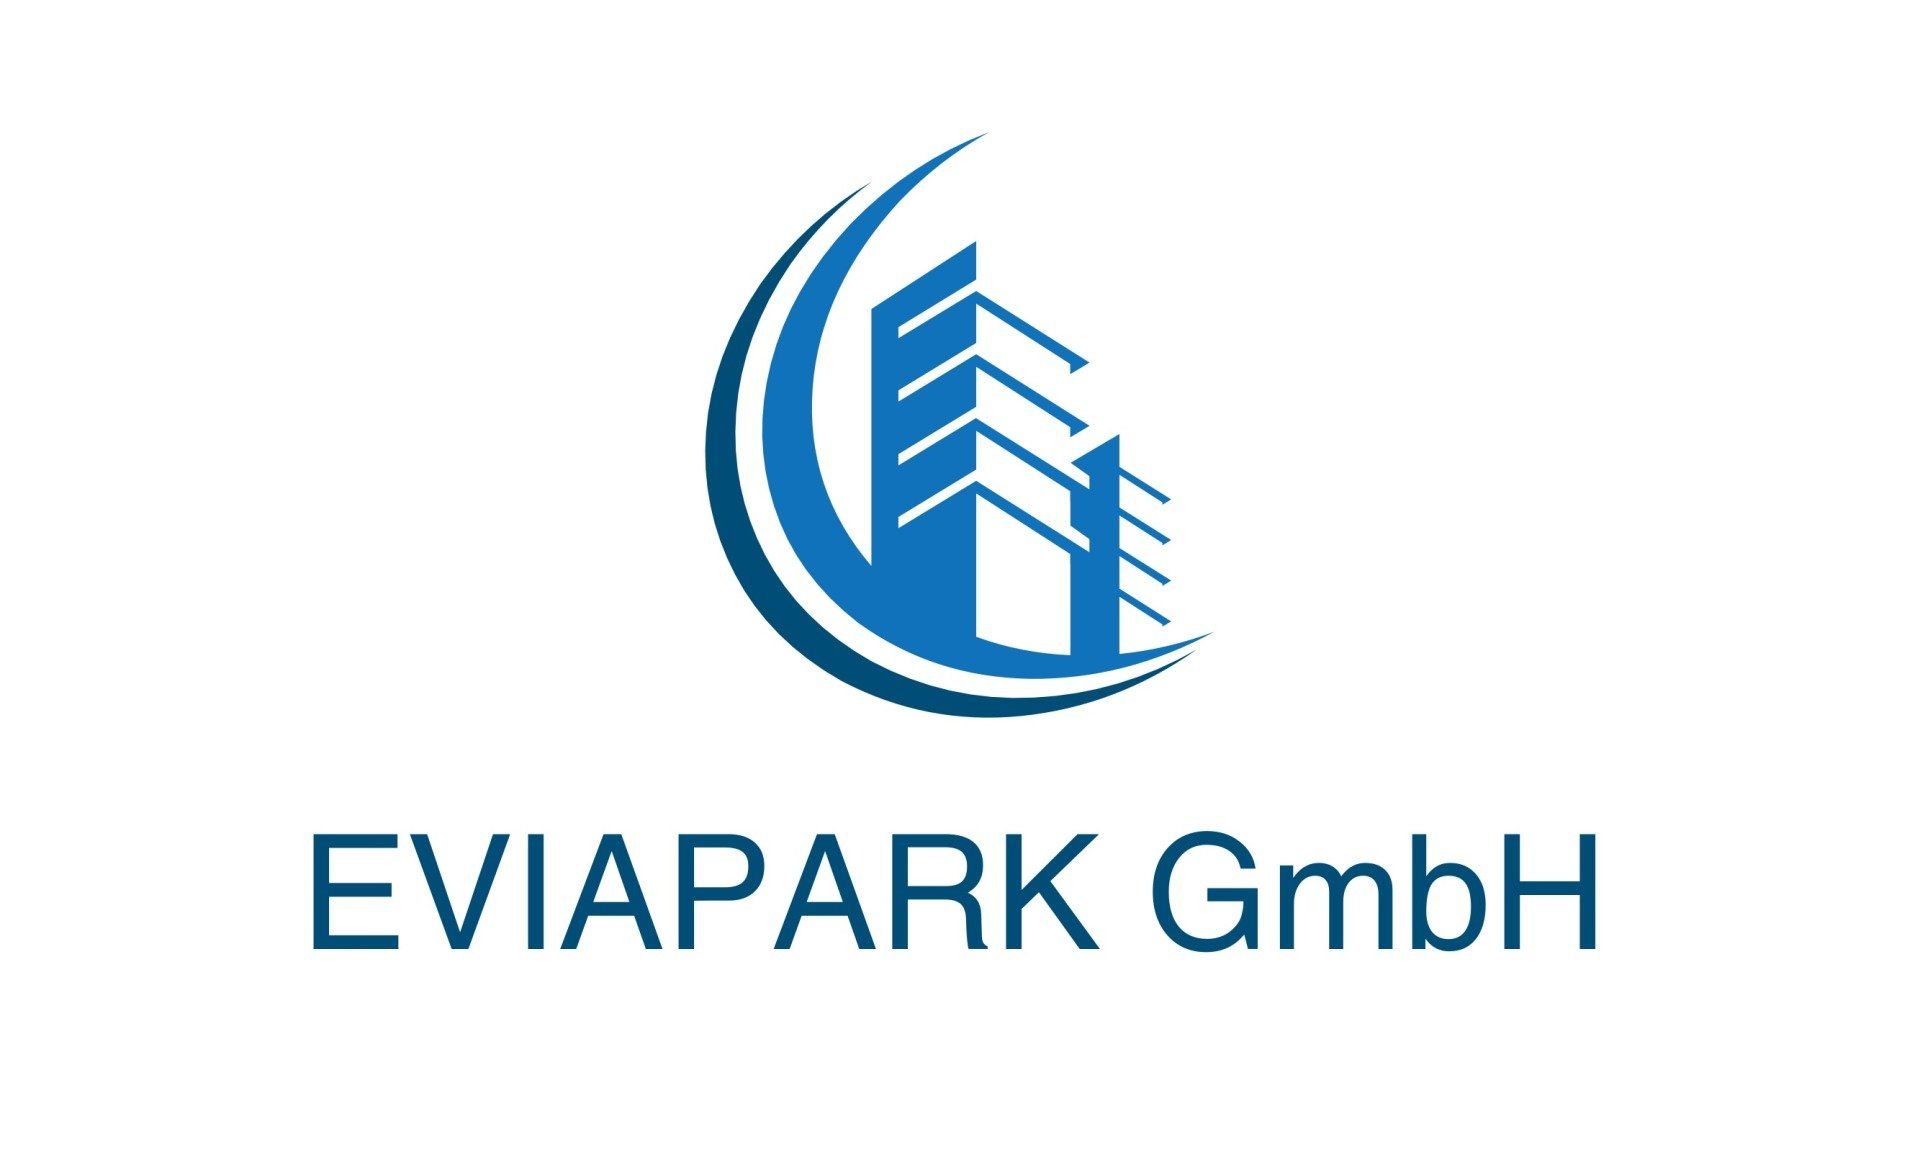 EVIAPARK GmbH - Parkhausreinigung - Tiefgaragenreinigung - Parking Services